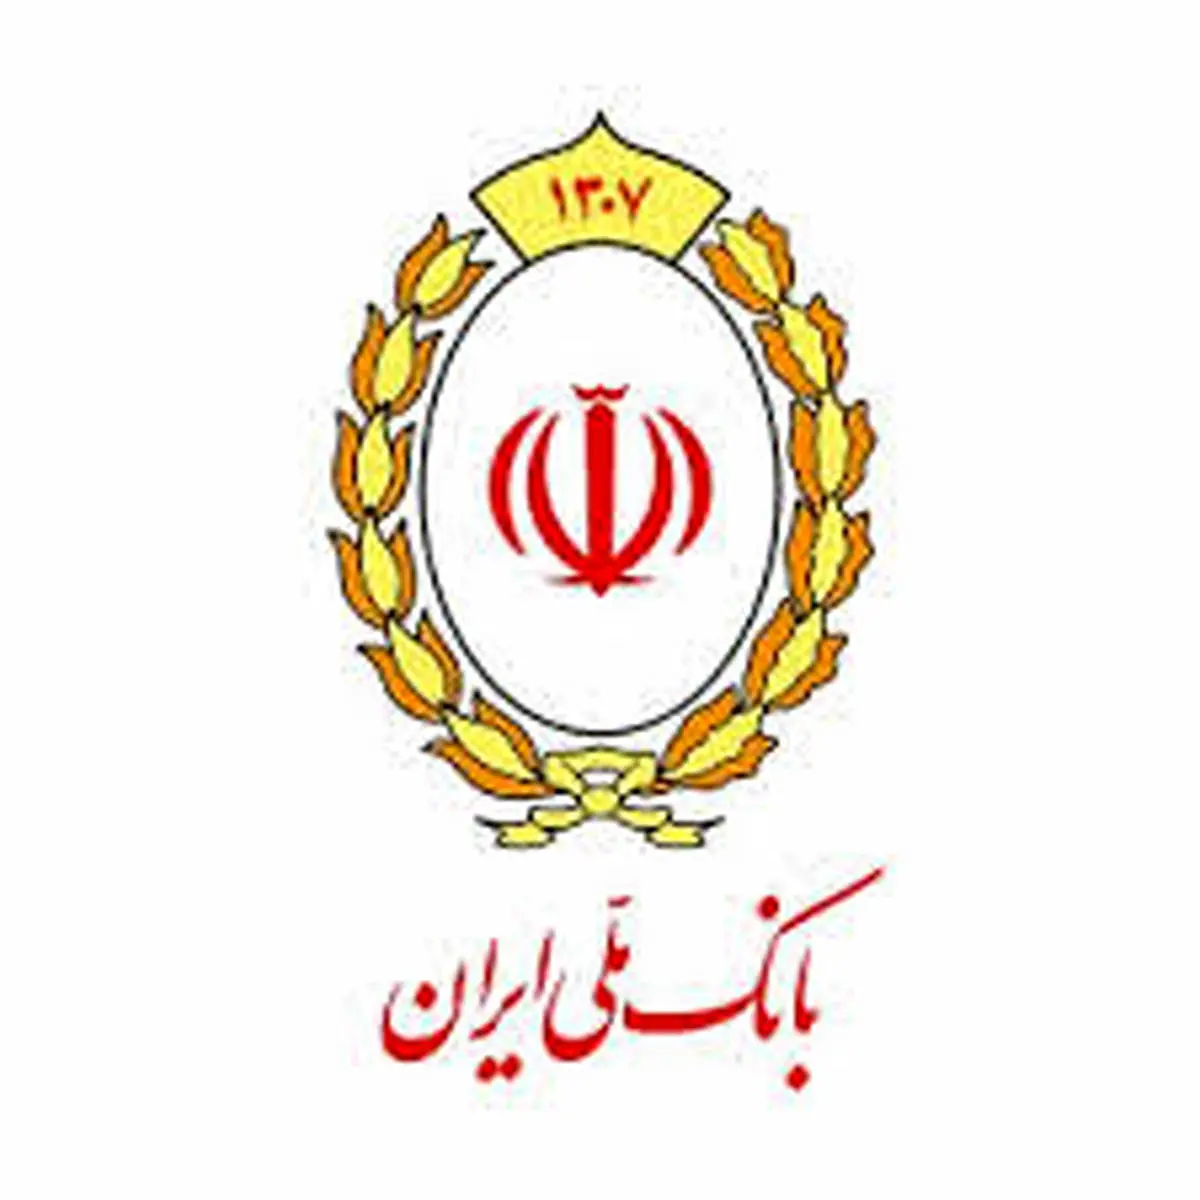 تاکید عضو هیات مدیره بانک ملی ایران بر اعتباربخشی به داده های مرتبط با مشتریان

